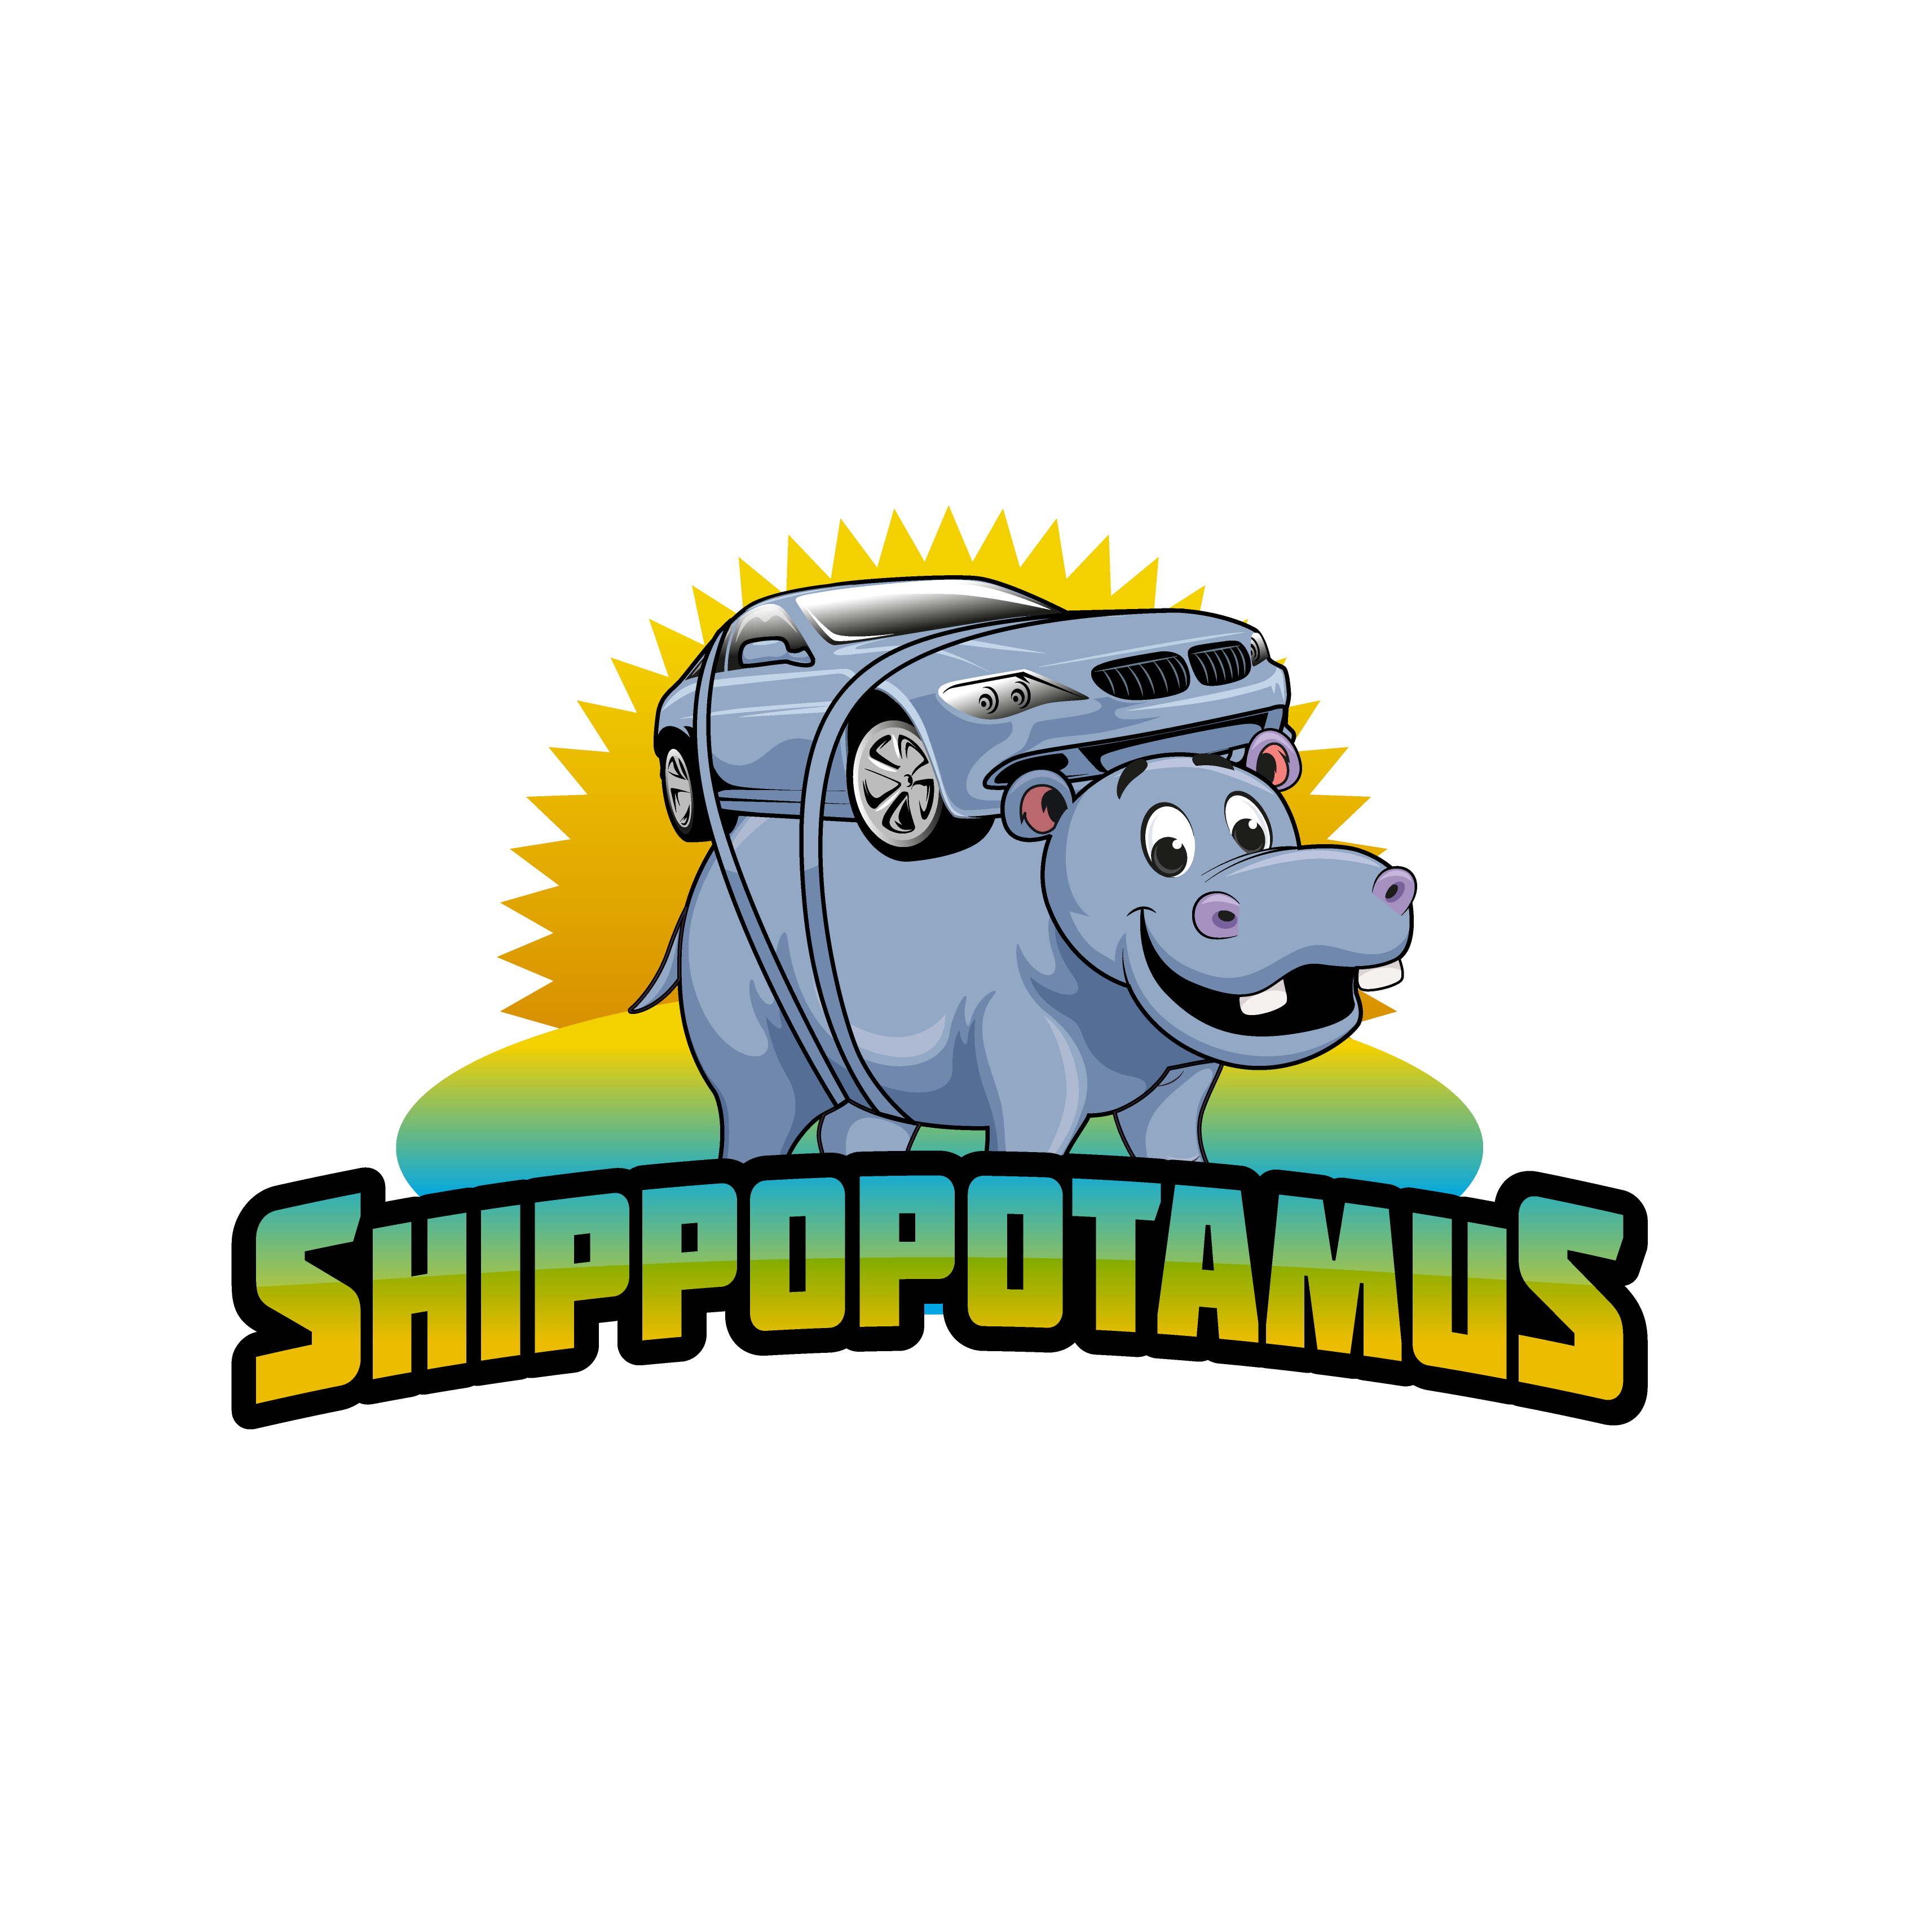 http://shippopotamus.com/wp-content/uploads/2020/10/SHIPPOPOTAMUS-logo-design-outlines-2_2.png